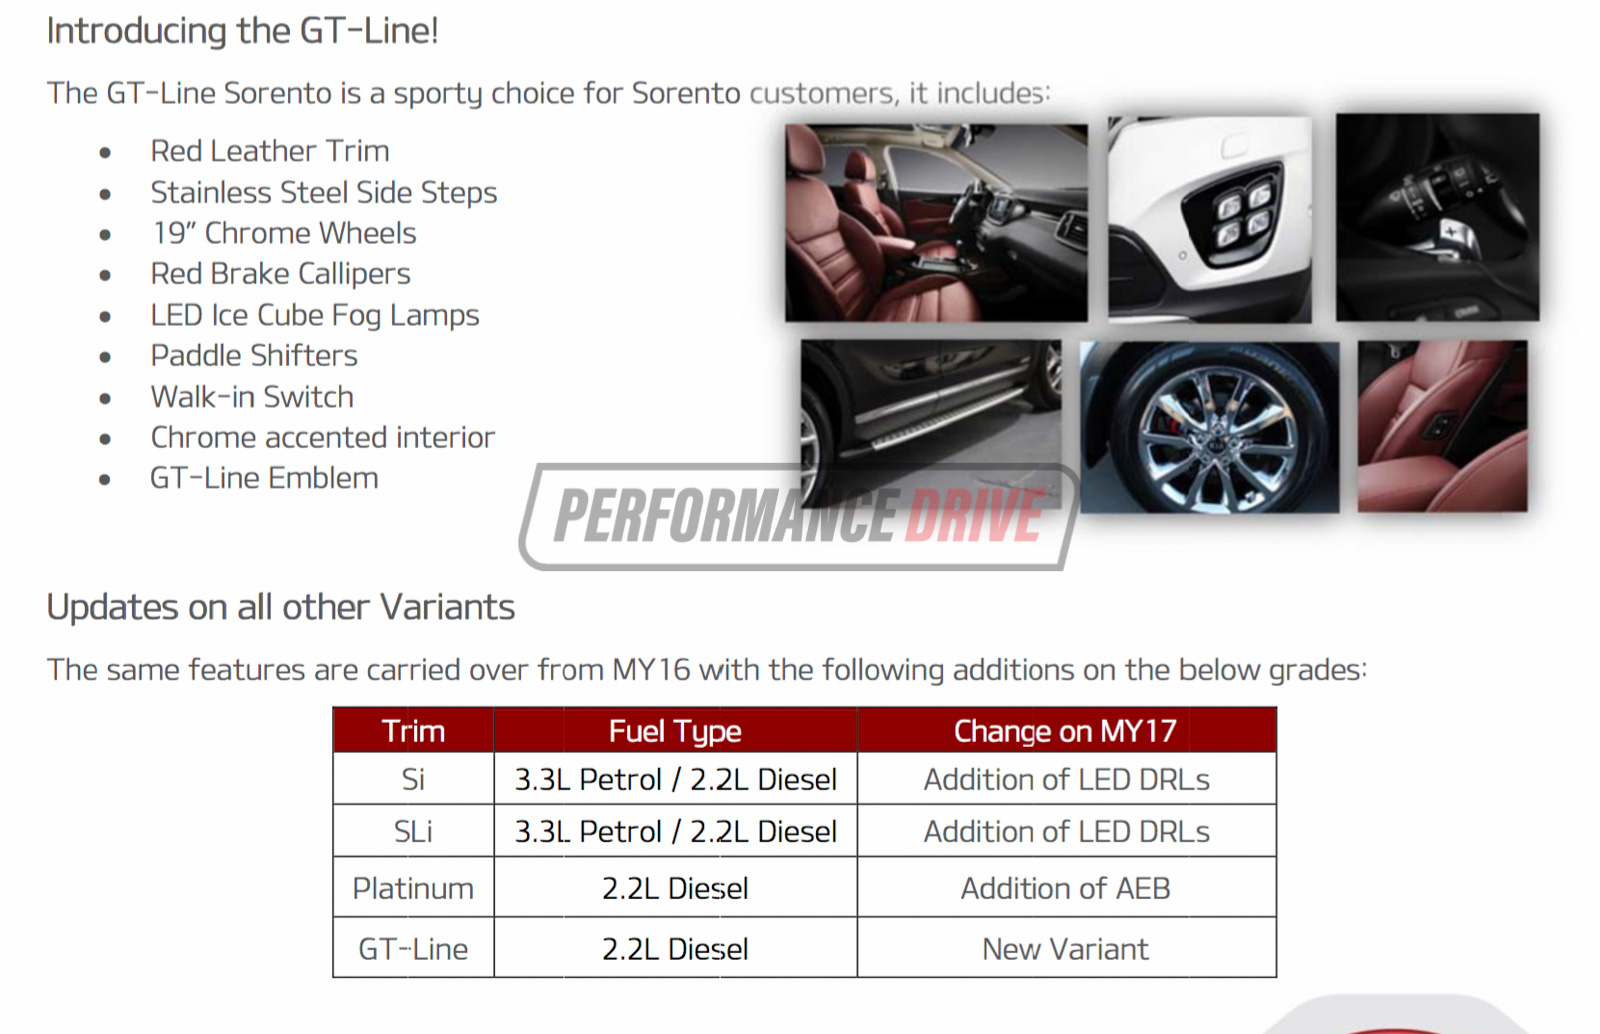 2017 Kia Sorento update adding GT-Line, AEB for Platinum variant